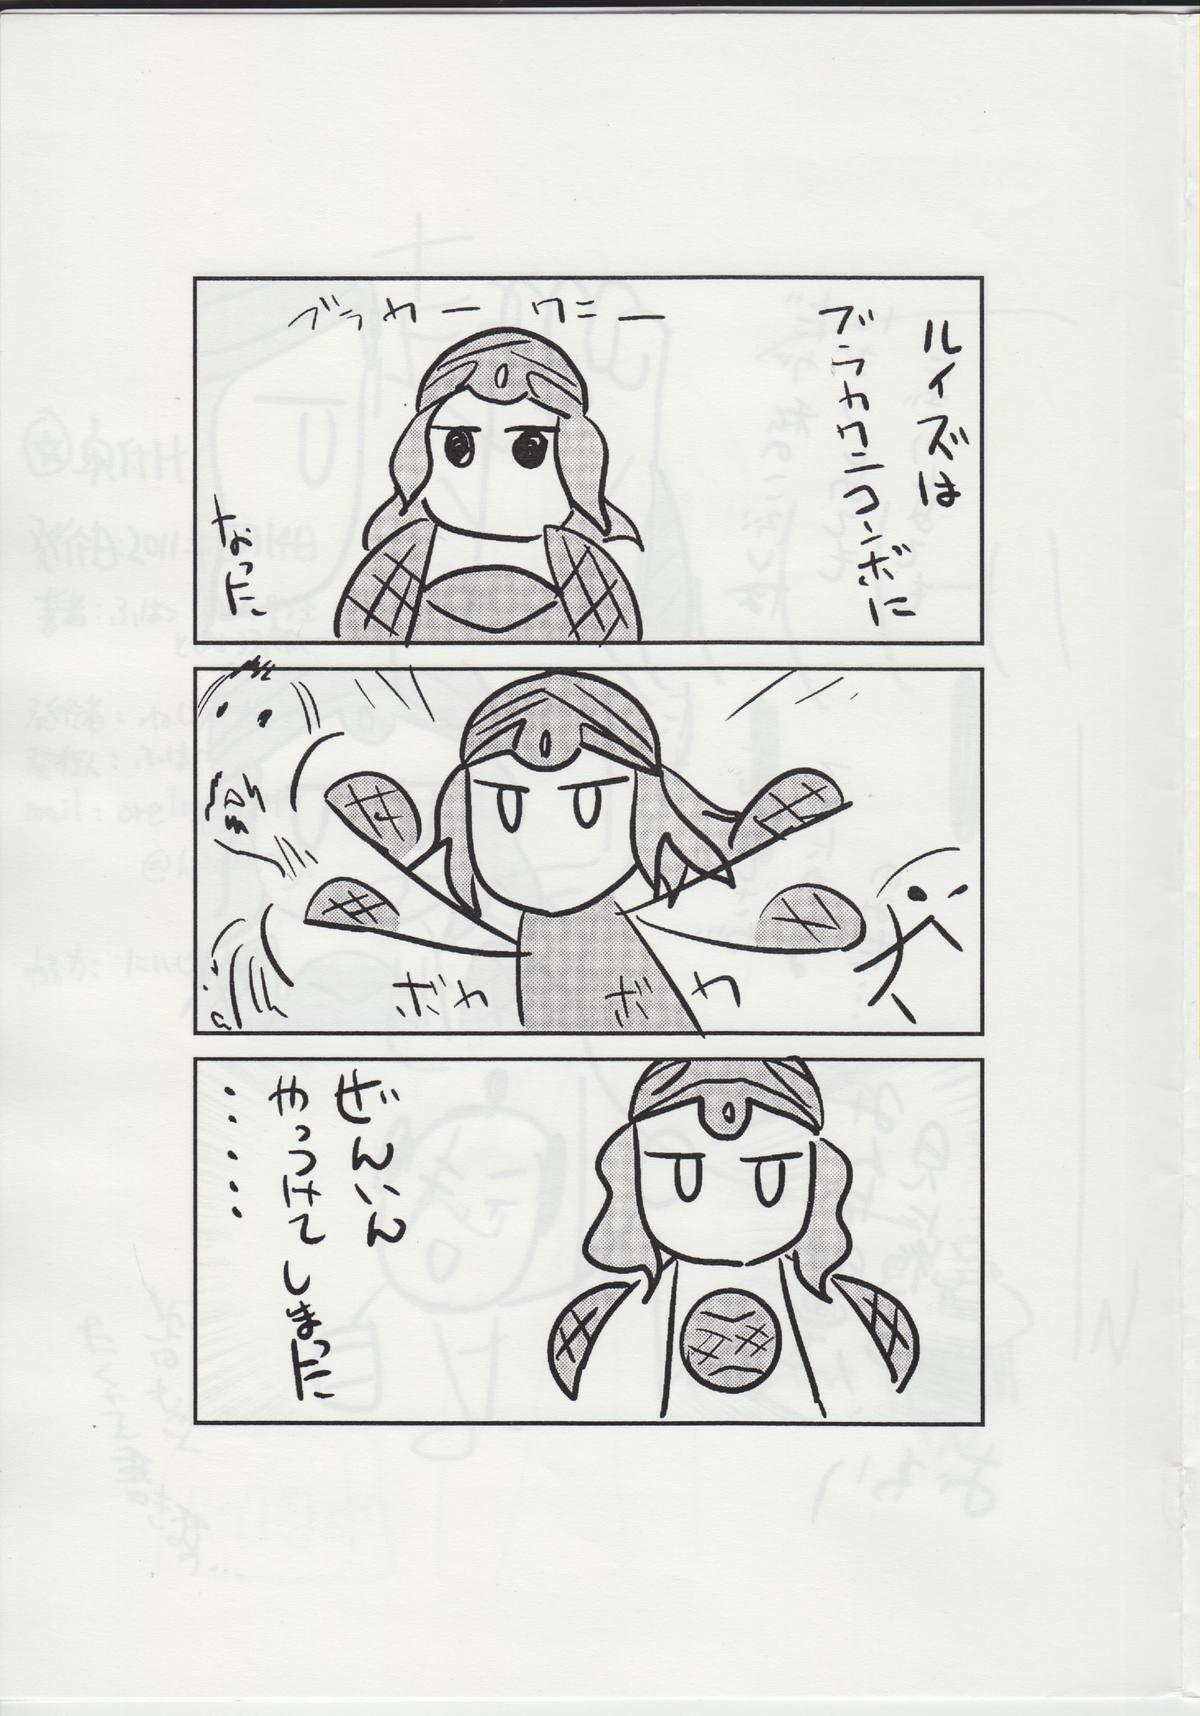 Hiddencam The Tiffania no Oppai 2 - Zero no tsukaima Gordibuena - Page 9